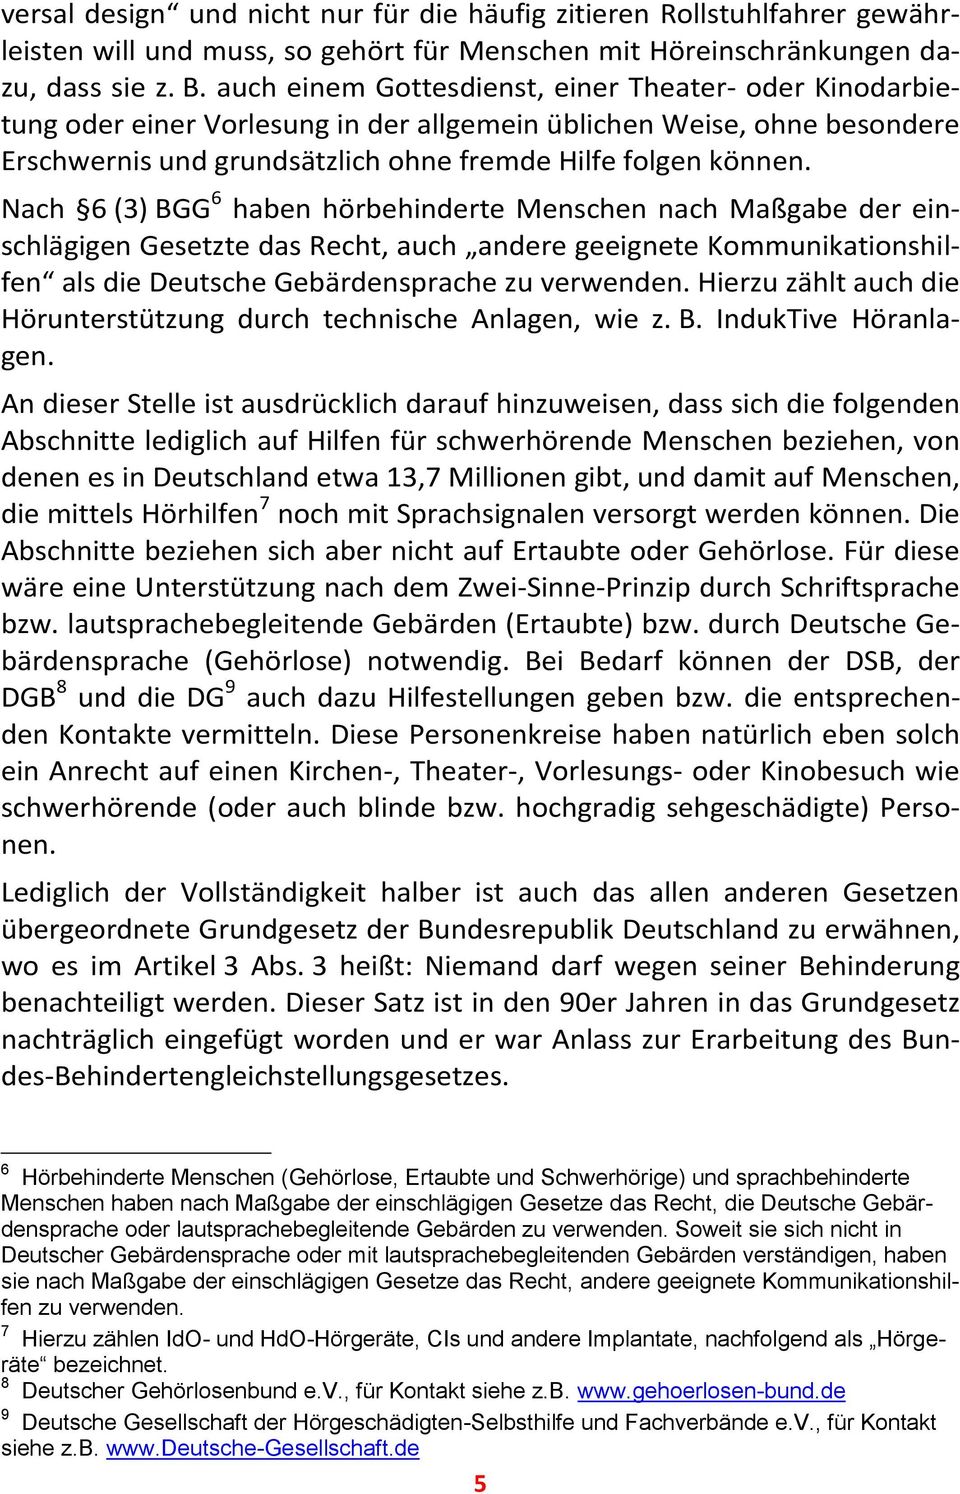 Nach 6 (3) BGG 6 haben hörbehinderte Menschen nach Maßgabe der einschlägigen Gesetzte das Recht, auch andere geeignete Kommunikationshilfen als die Deutsche Gebärdensprache zu verwenden.